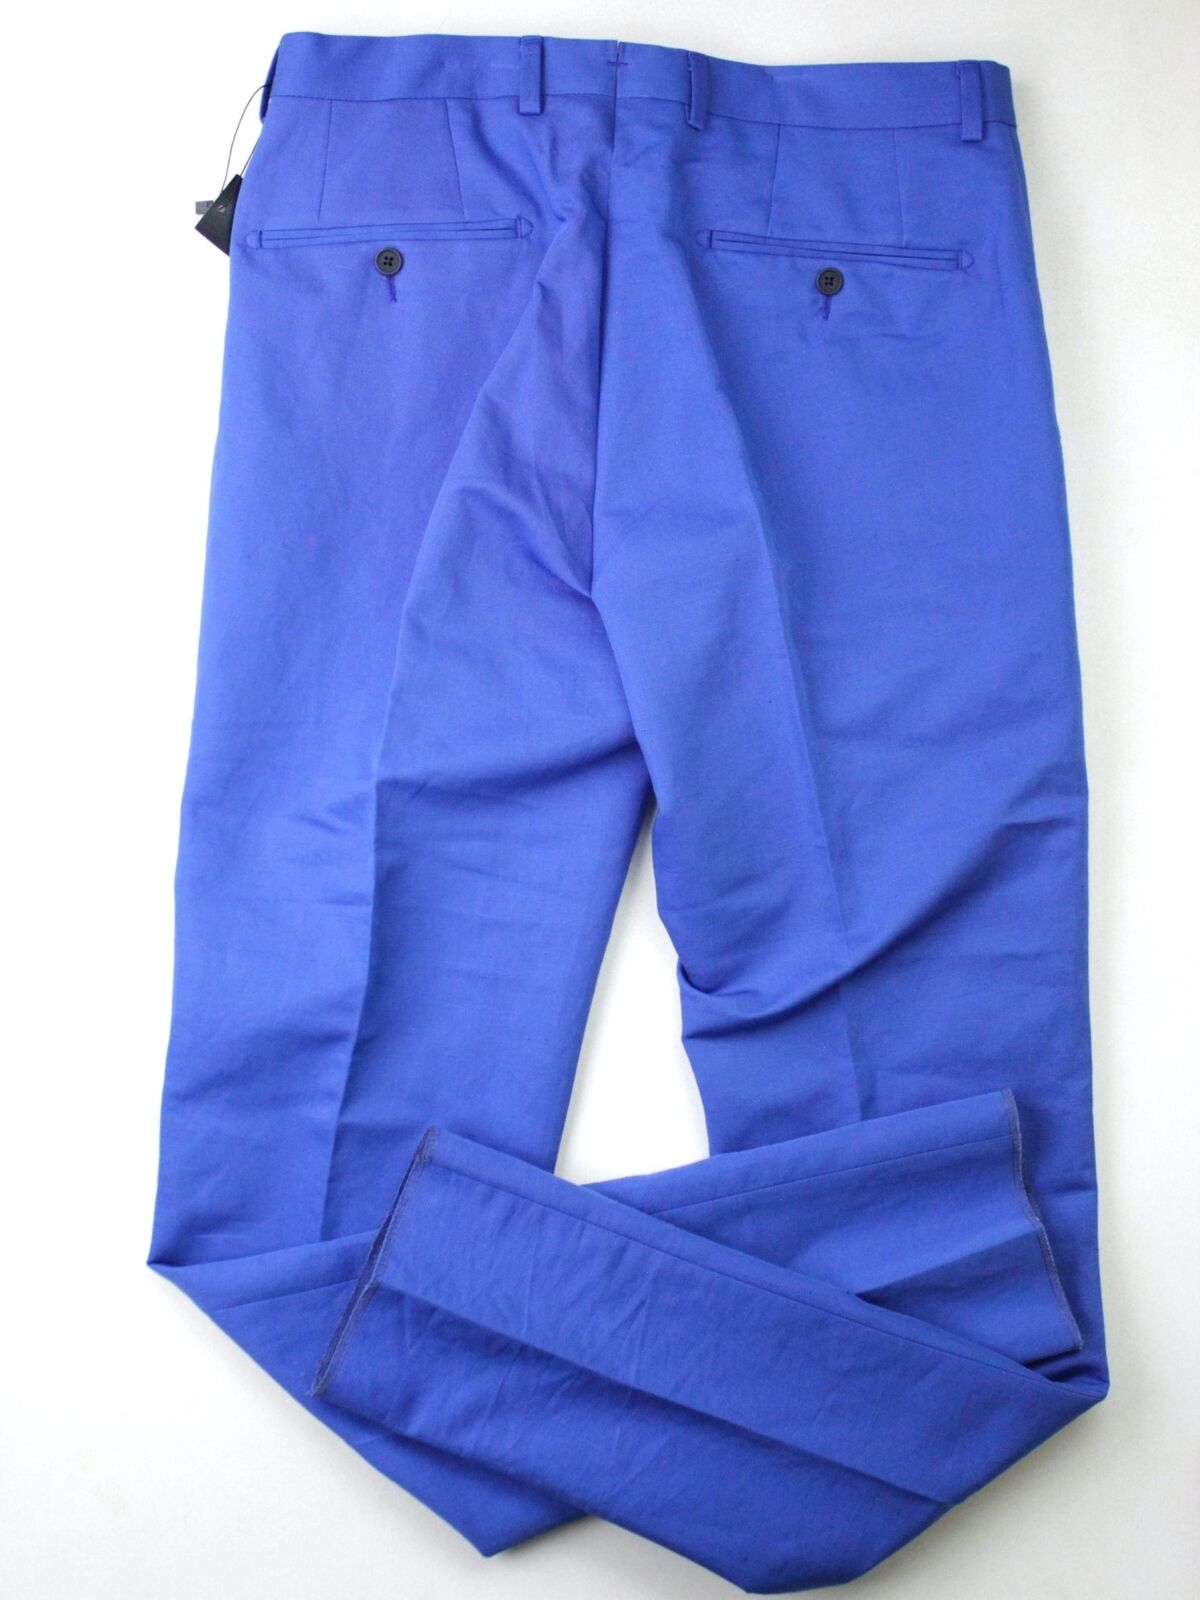 Mens Store Bloomingdales Cotton Linen Slim Fit Dress Pants Royal Blue Size 32